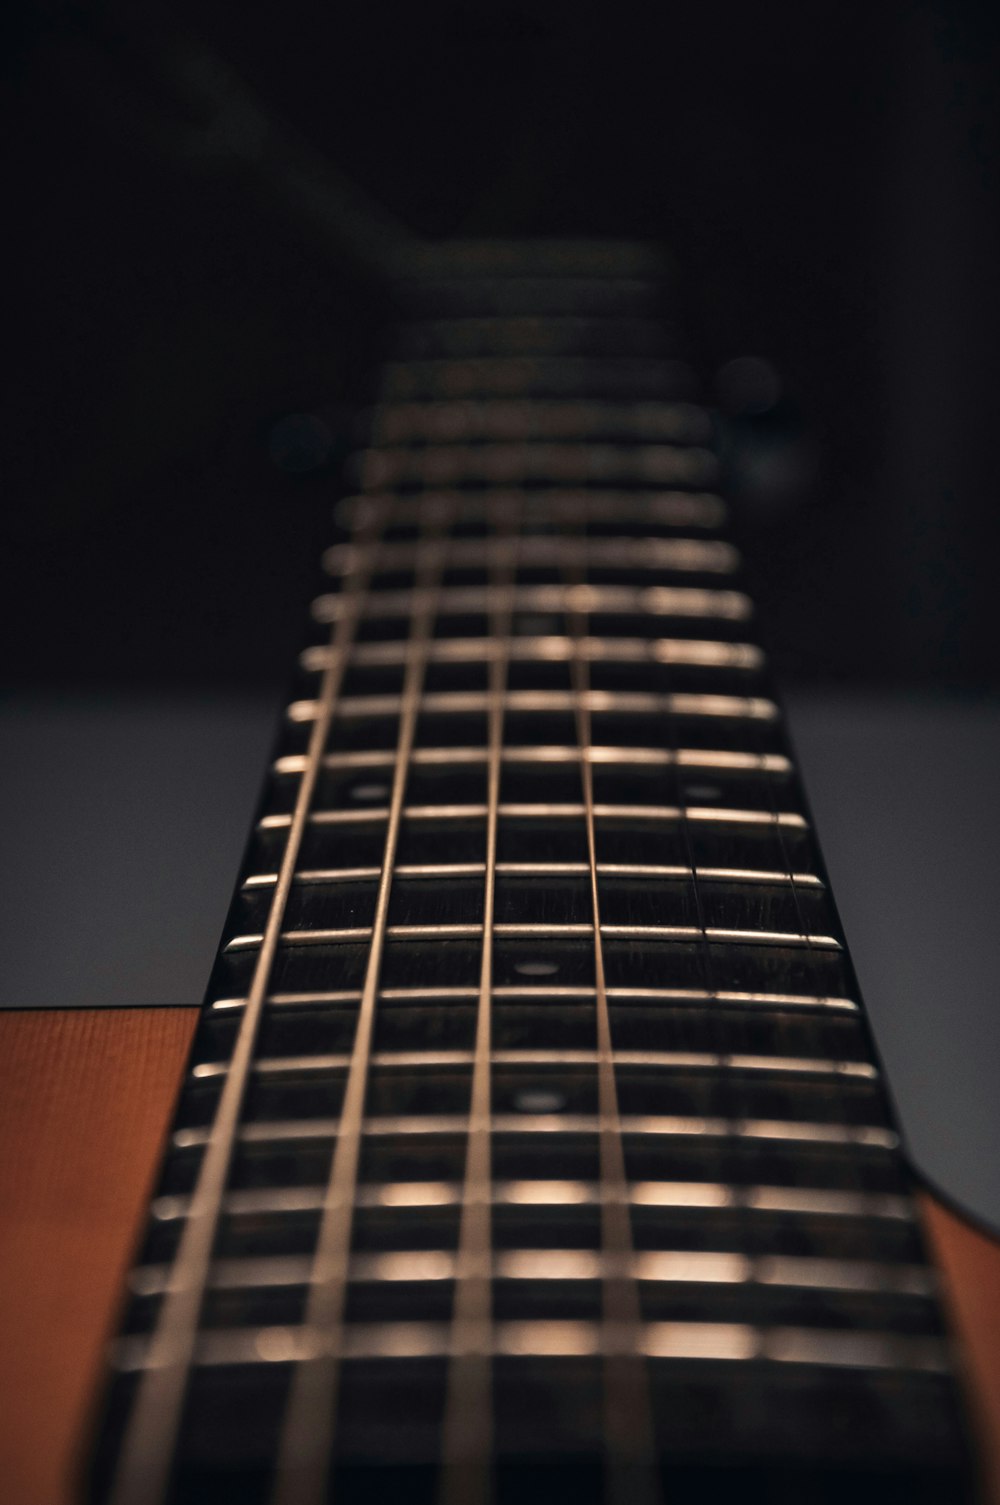 Guitarra acústica marrón en fotografía de primer plano